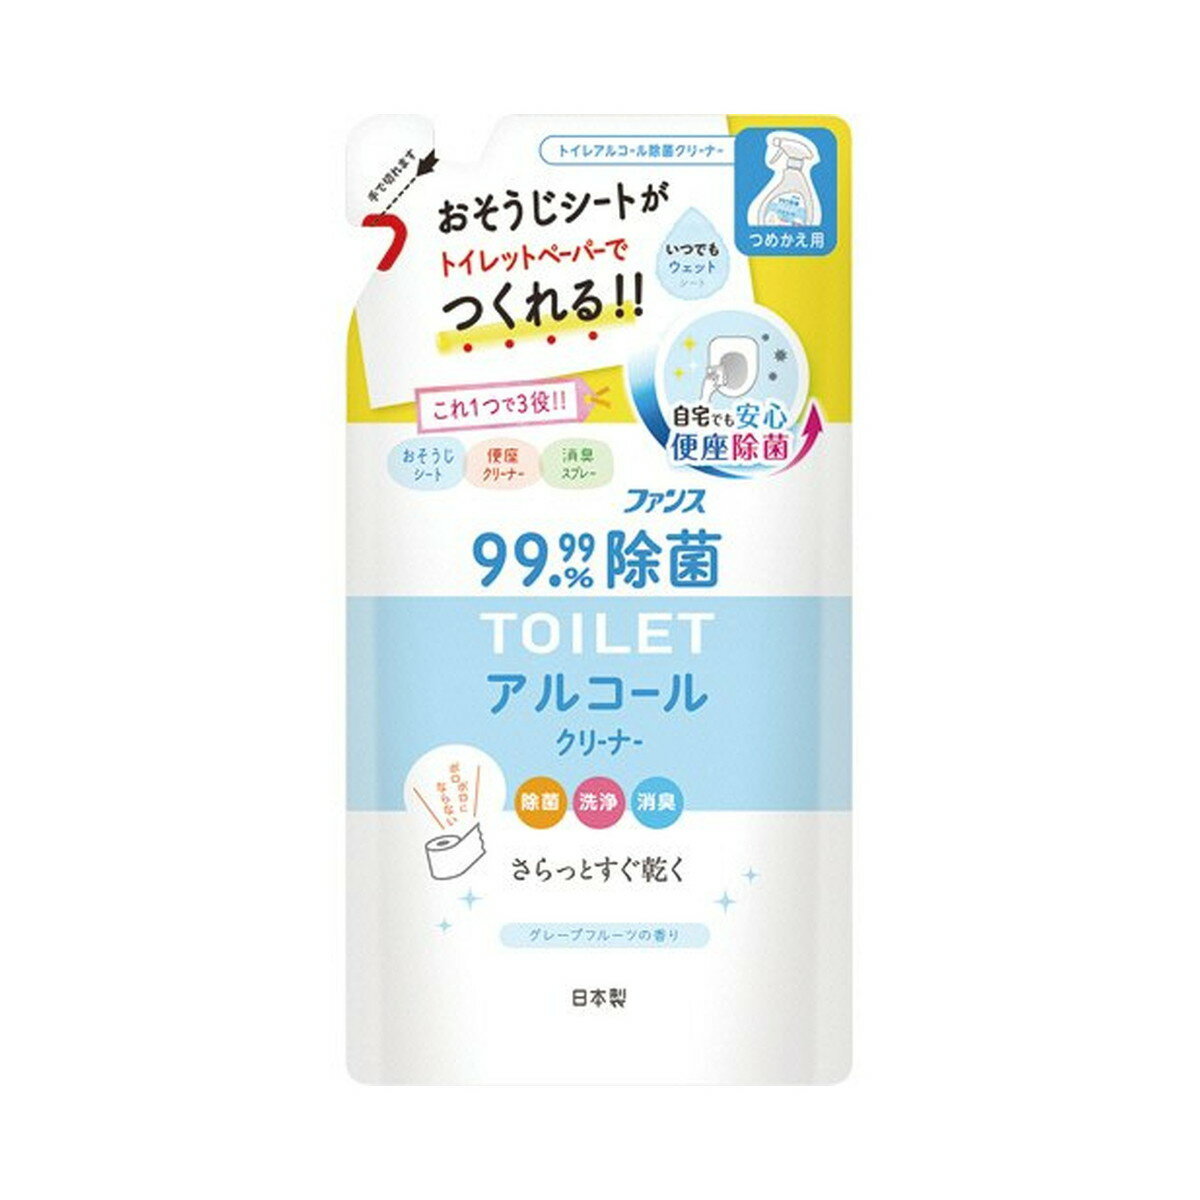 【あわせ買い2999円以上で送料お得】第一石鹸 ...の商品画像